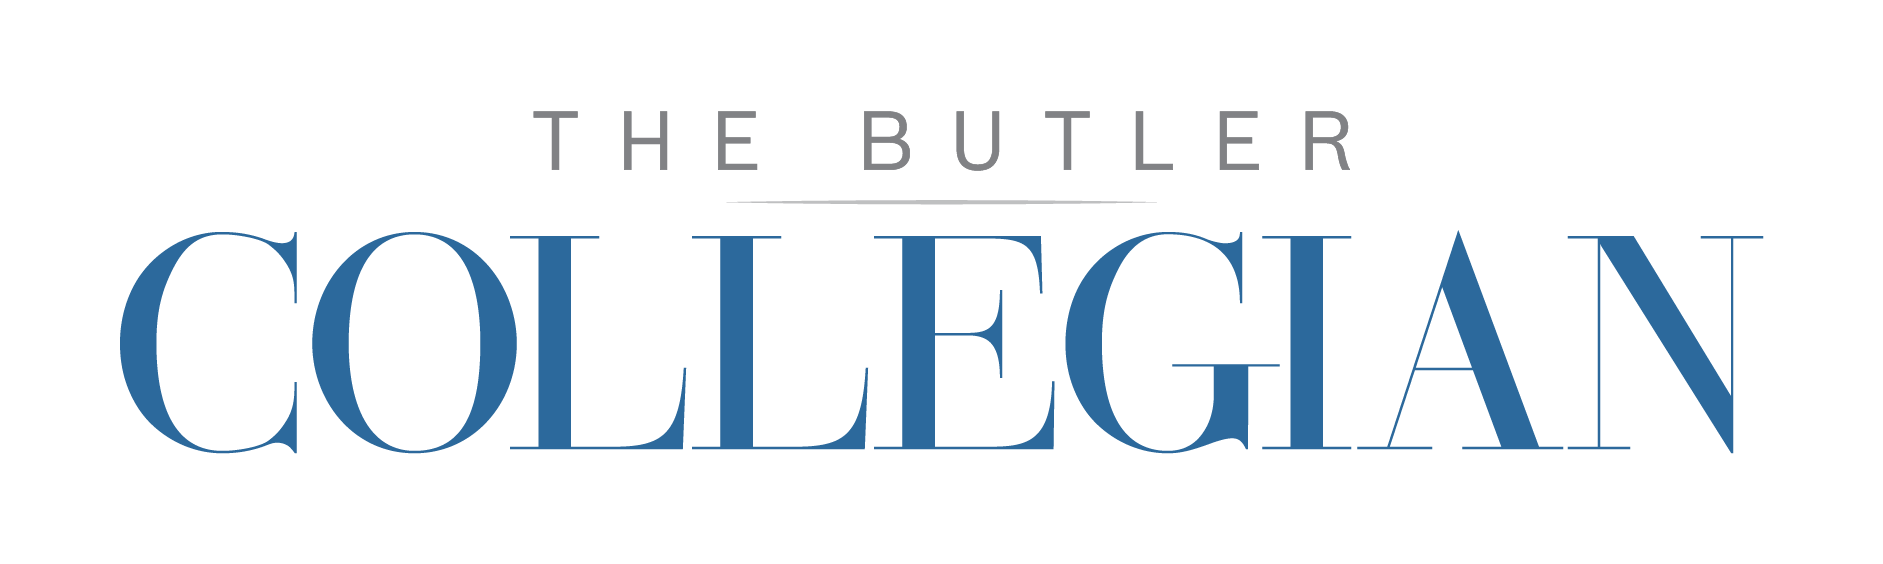 The Butler Collegian